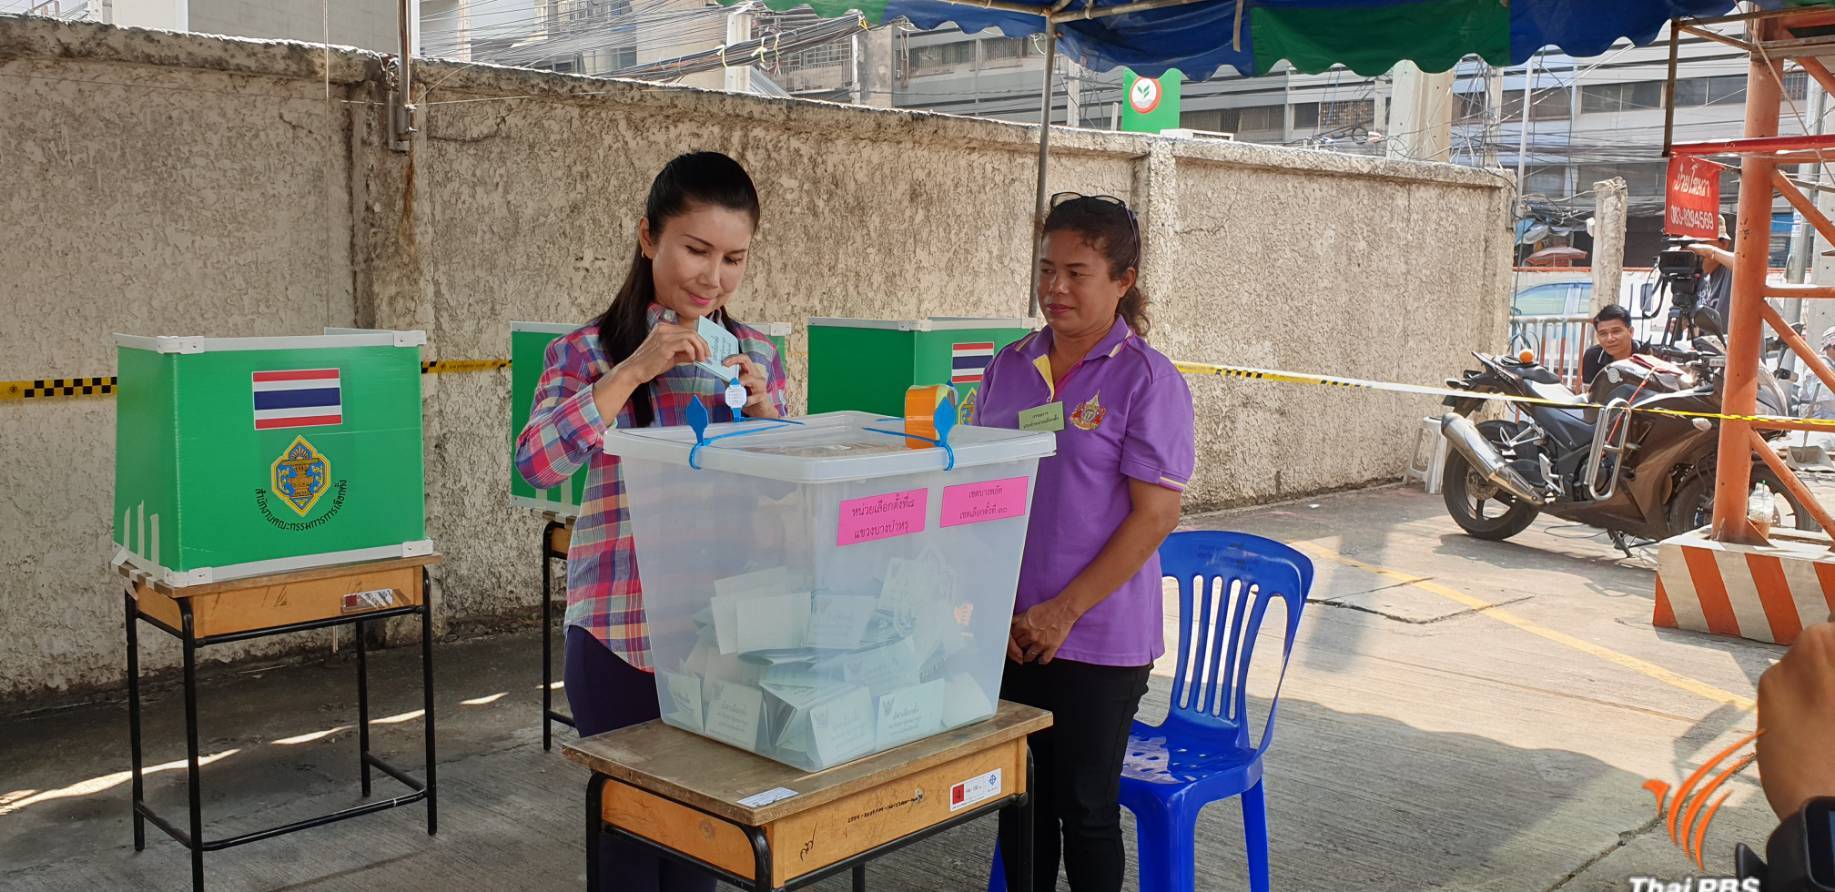 น.ส.กัญจนา ศิลปอาชา หัวหน้าพรรคชาติไทยพัฒนา ใช้สิทธิ์เลือกตั้งแล้ว ที่หน่วยเลือกตั้งที่ 8 แขวงบำหรุ เขตบางพลัด พร้อมกับบุตรสาวบุญธรรม